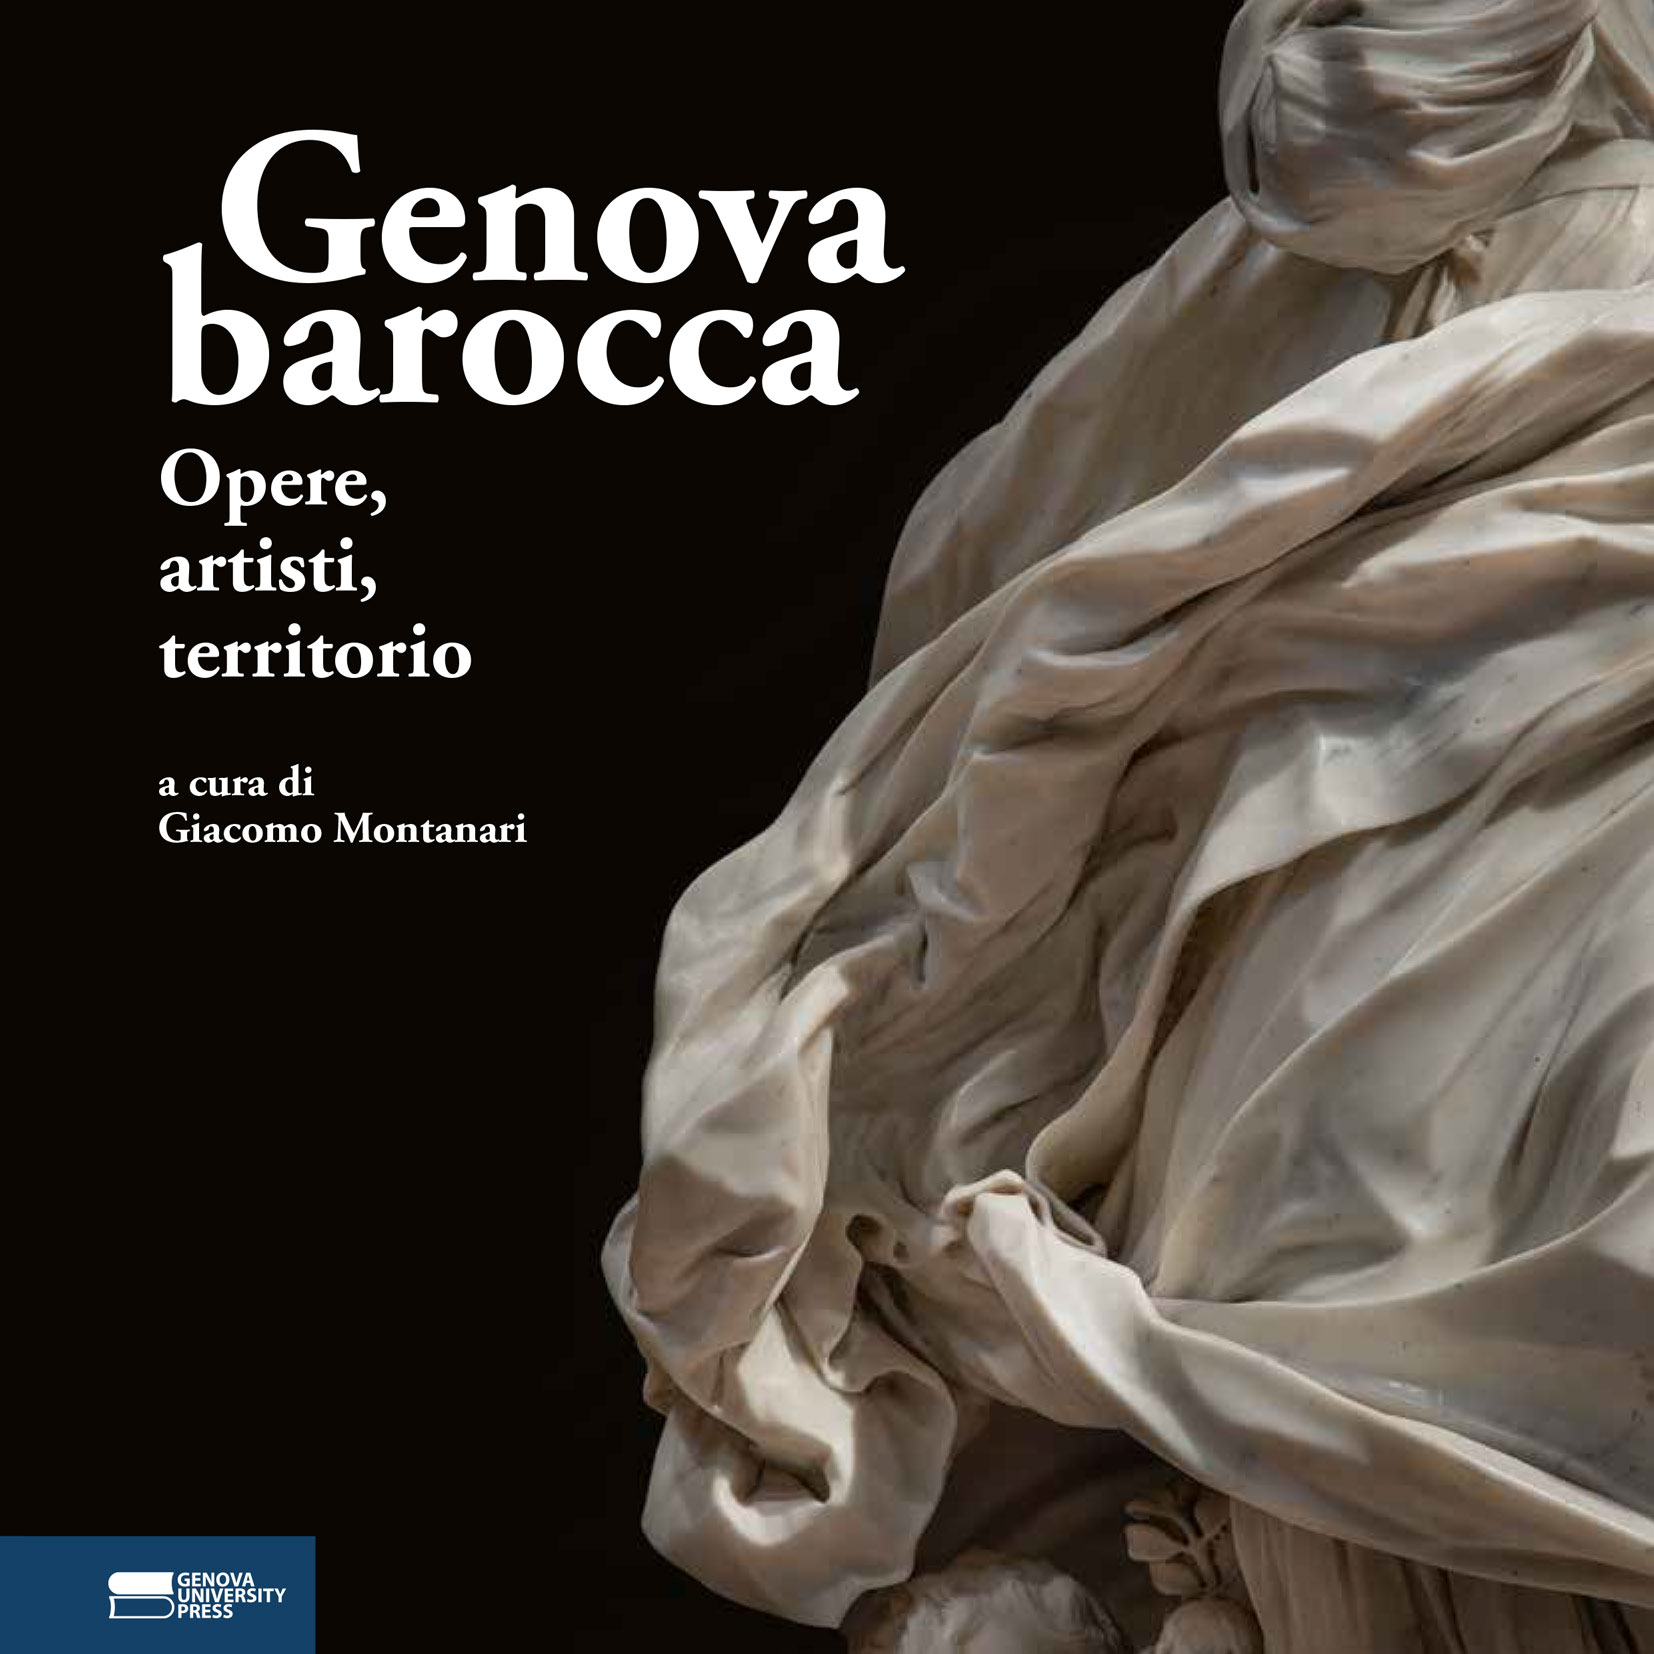 Genova barocca